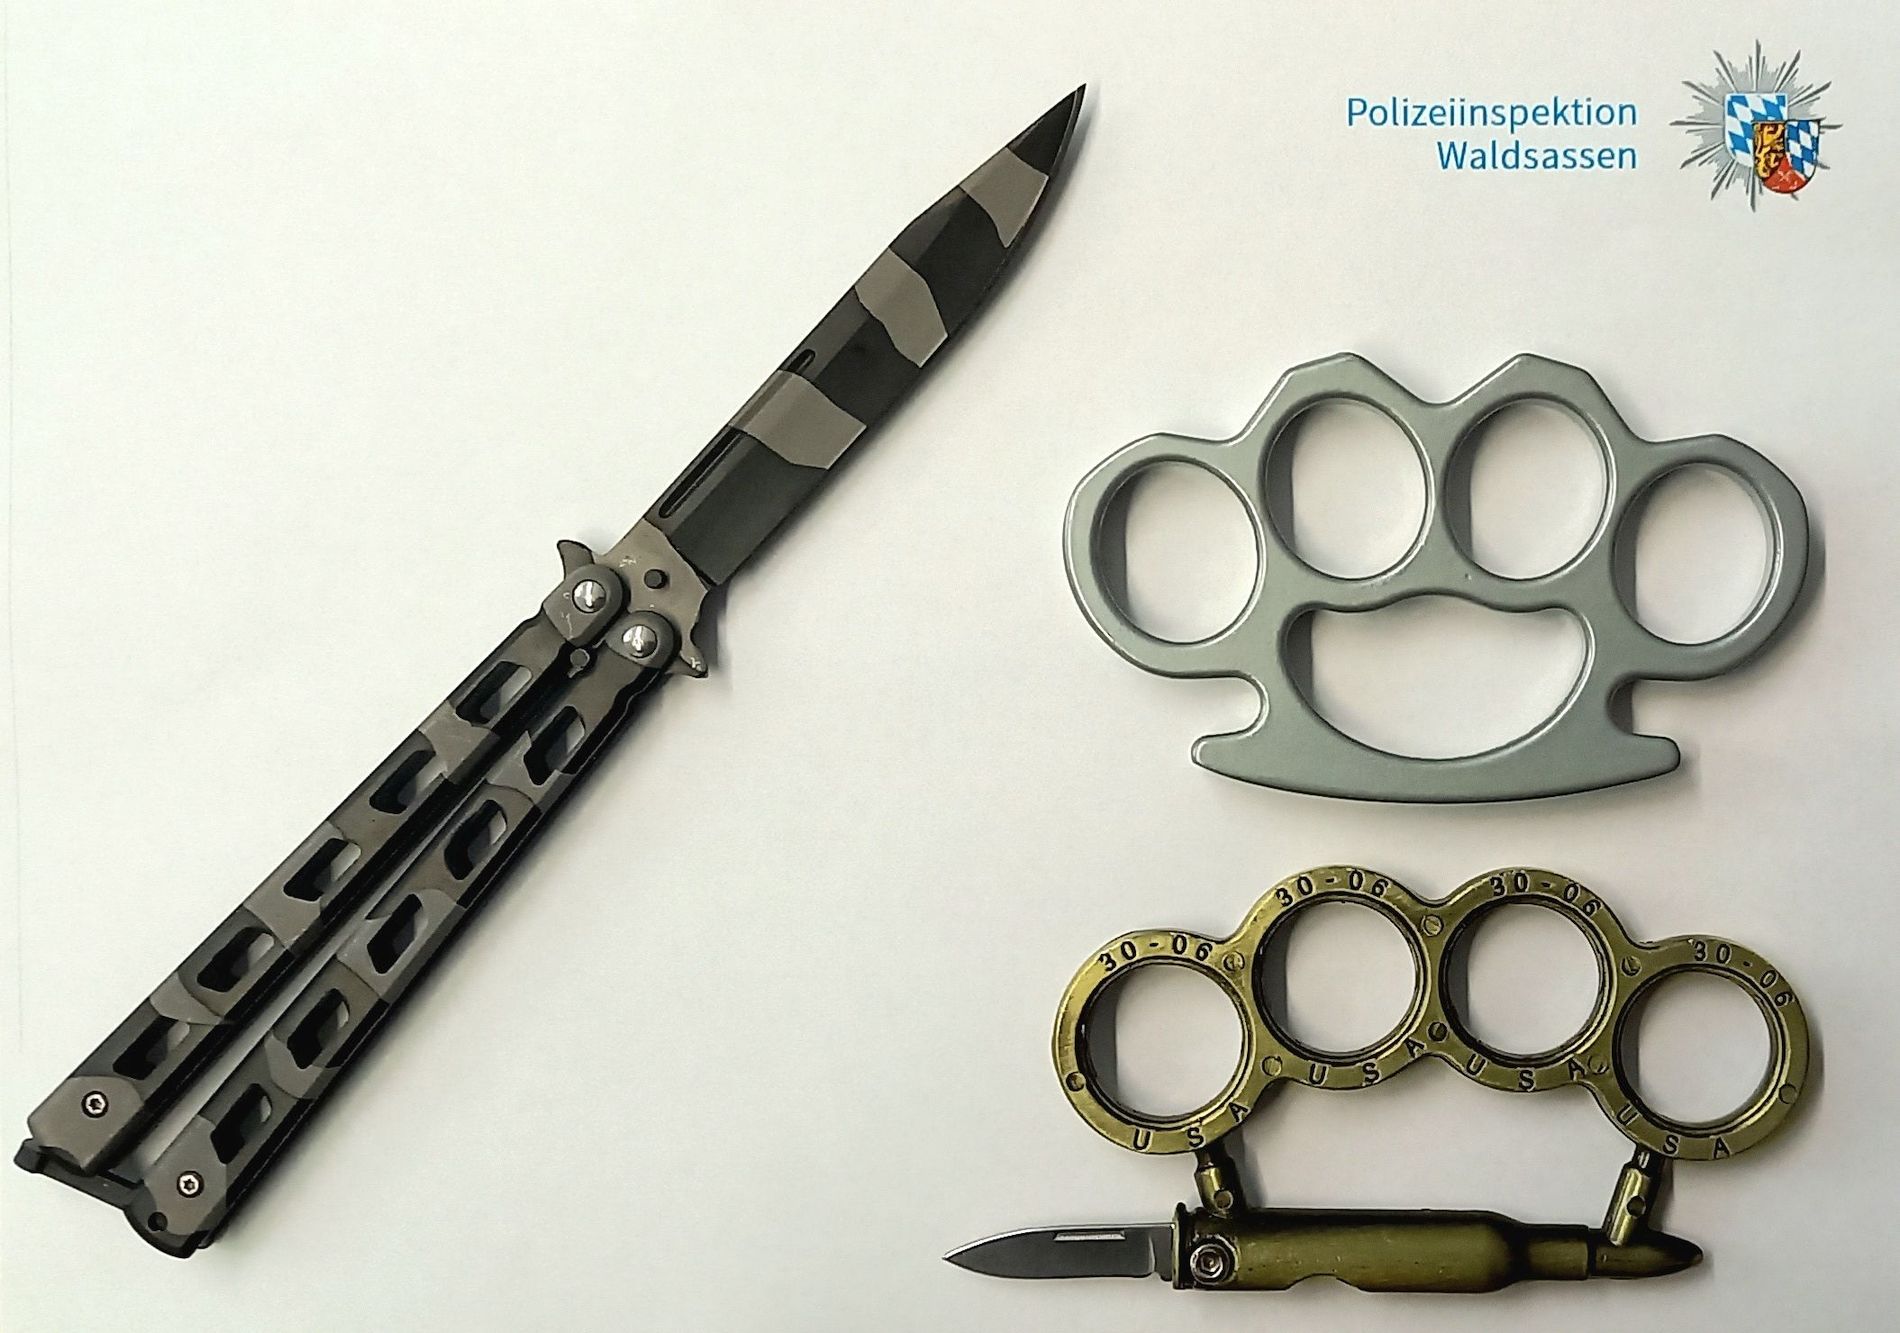 Sichergestellte Gegenstände Foto: Polizeiinspektion Waldsassen